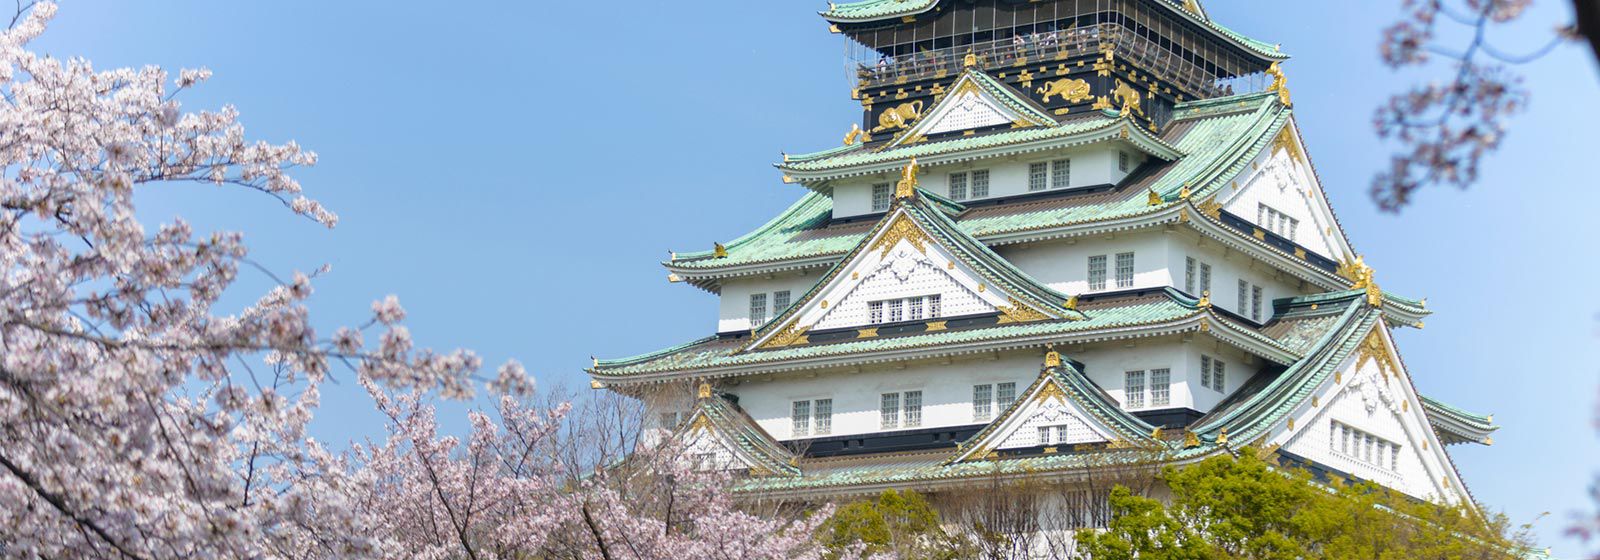 Find Osaka Hotels Top 5 Hotels In Osaka Japan By Ihg 